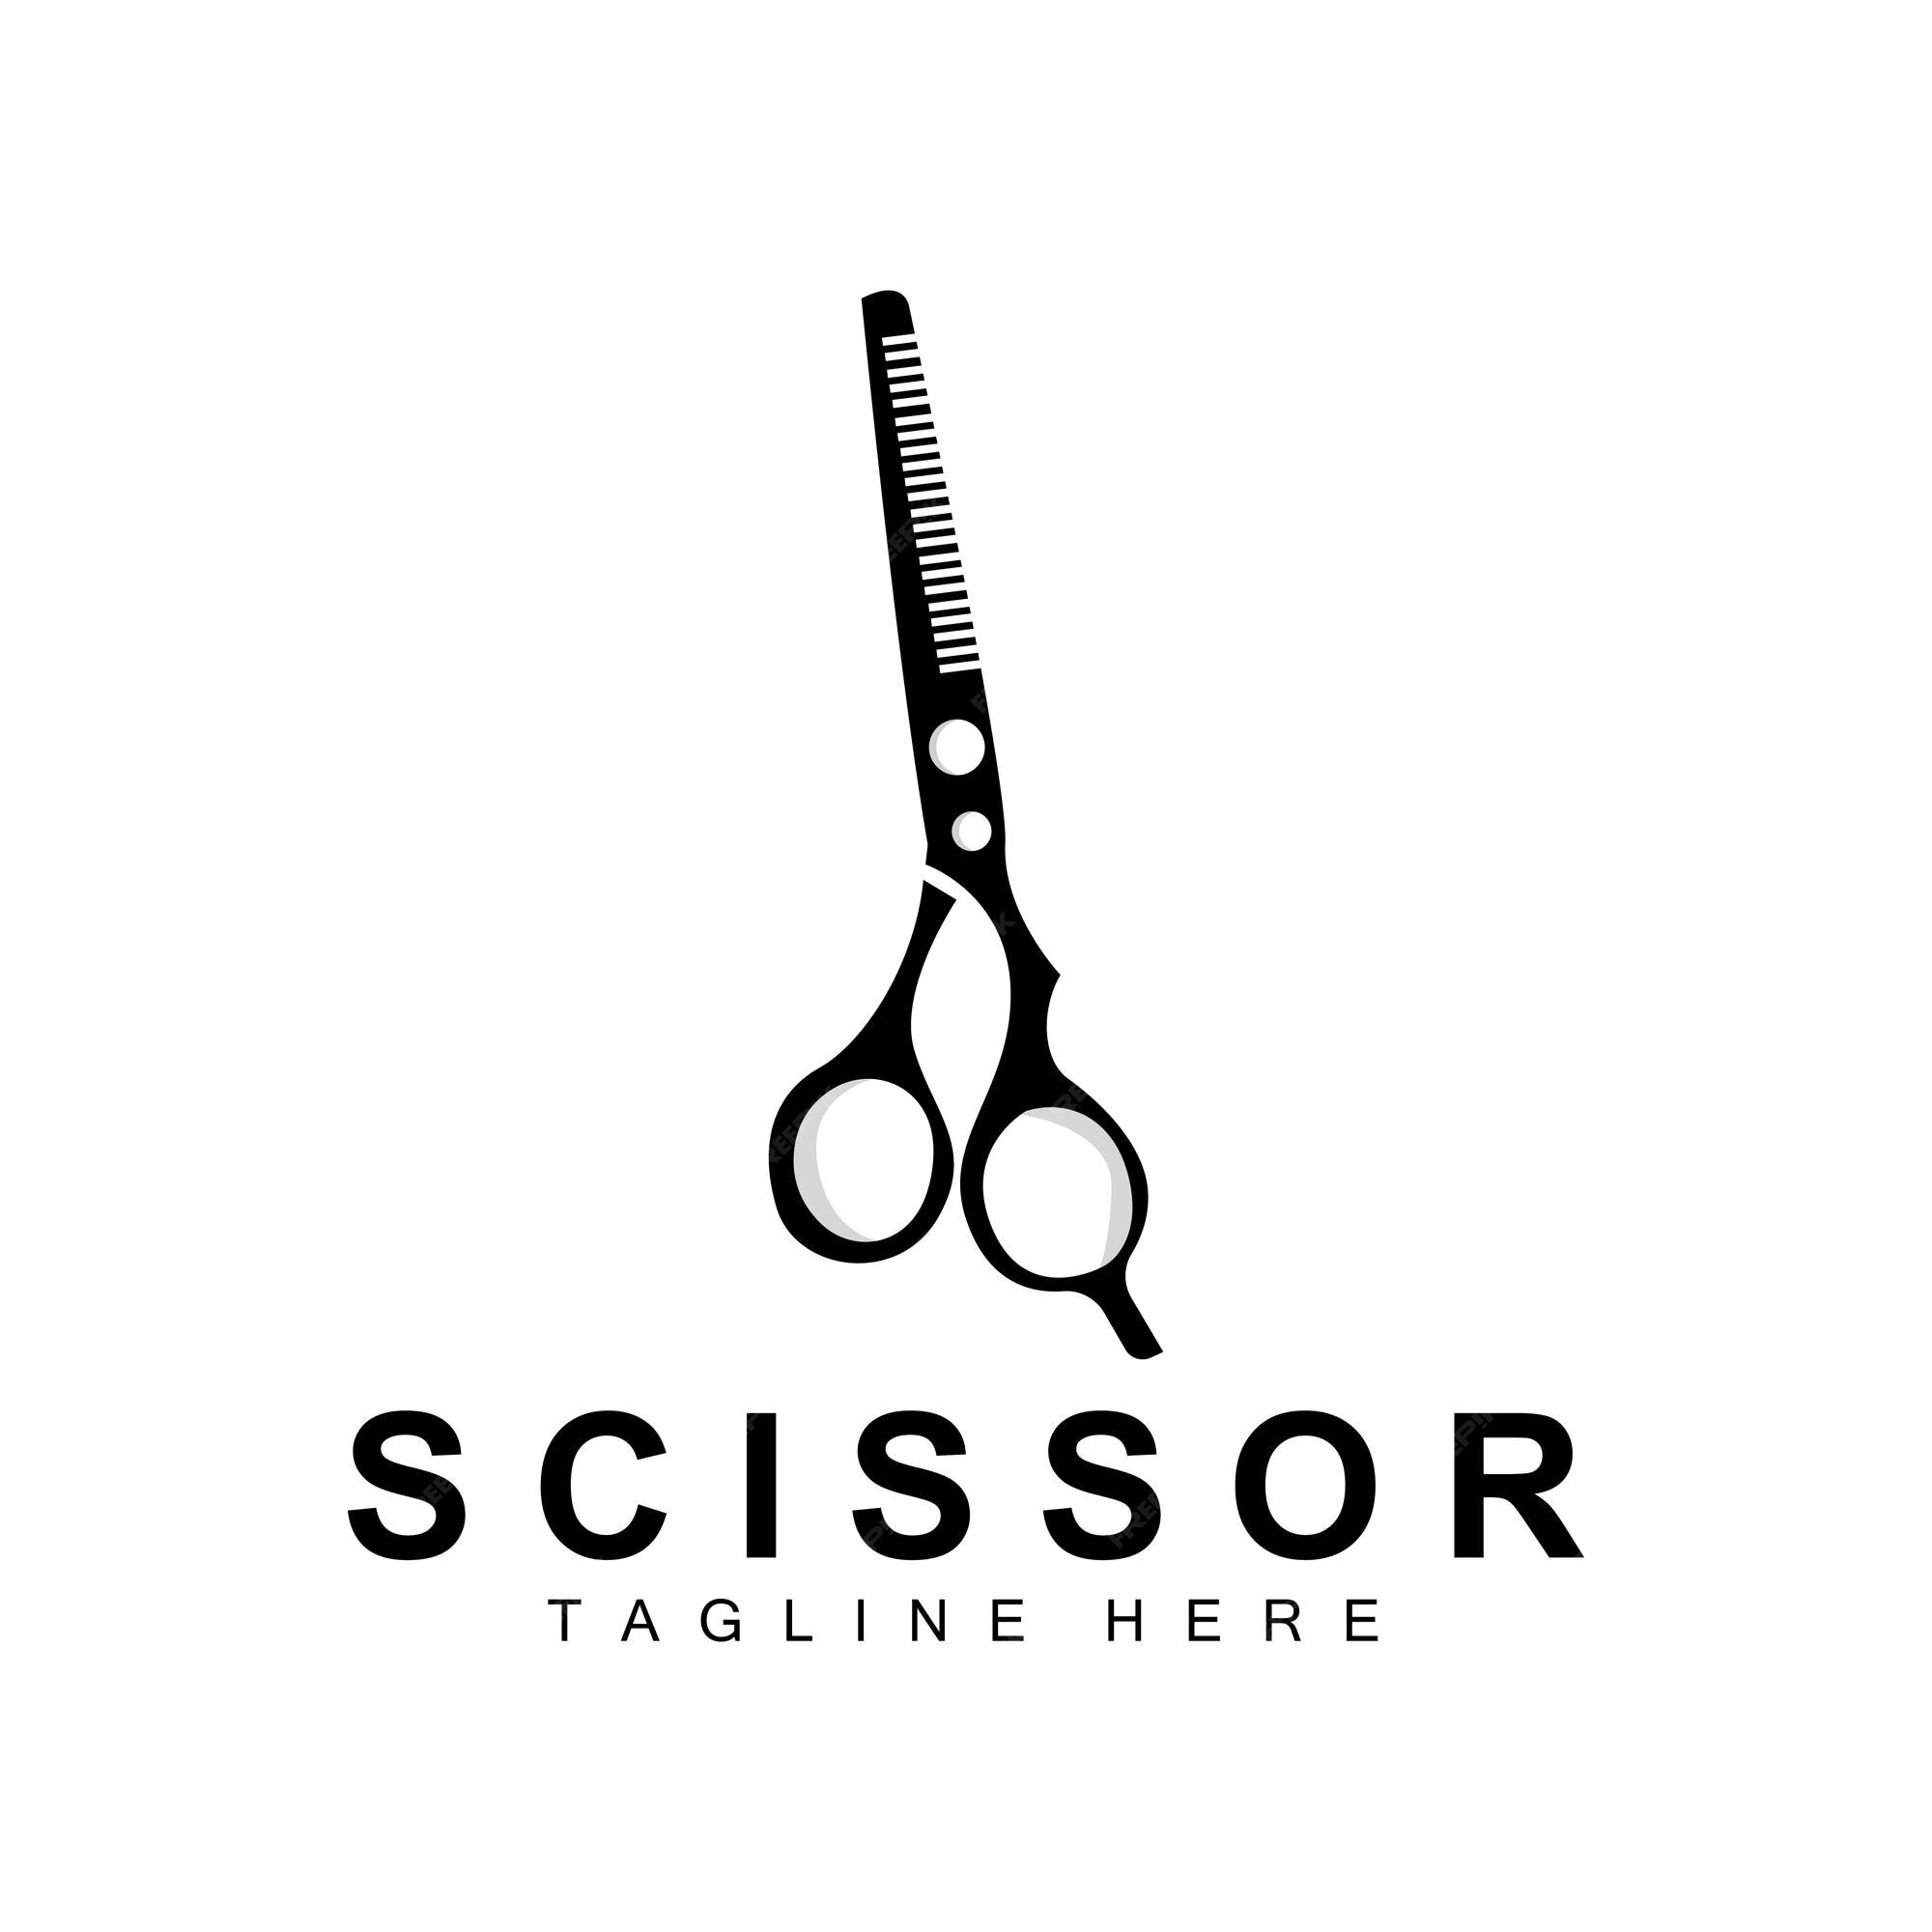 overschot Portier filter Schaar logo design barbershop scheerapparaat vector kapper schaar merk  illustratie | Premium Vector